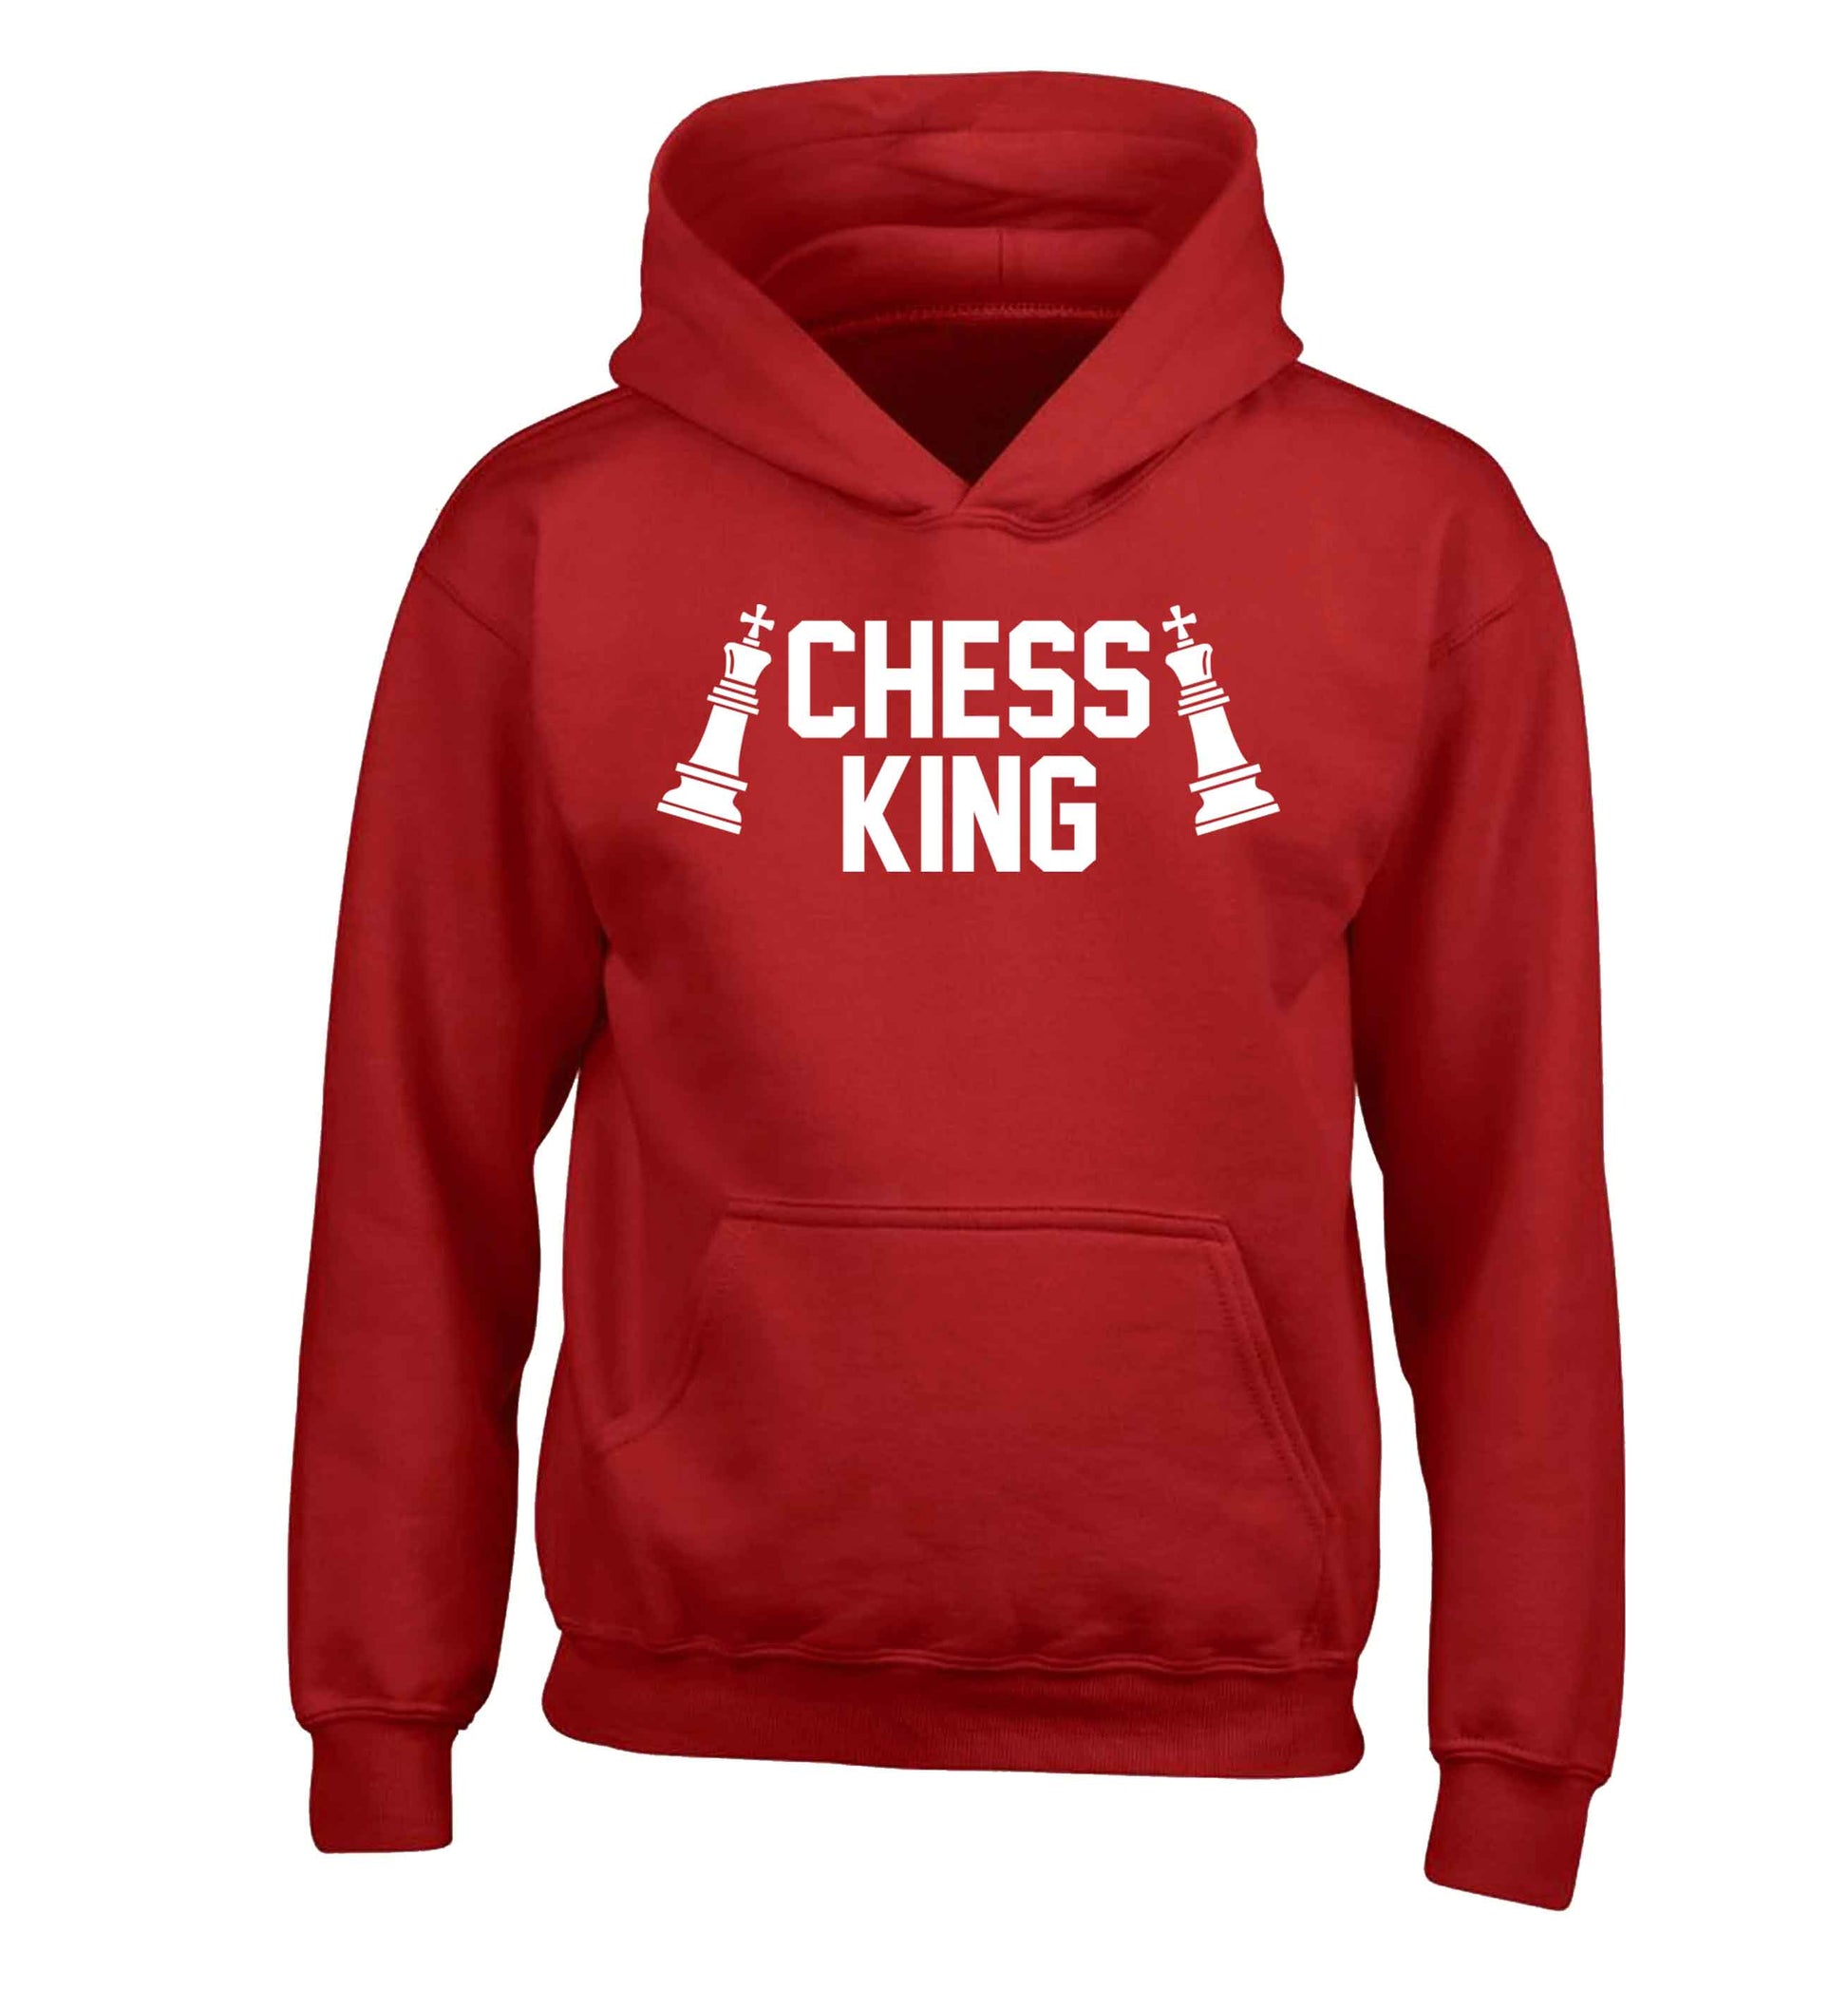 Chess king children's red hoodie 12-13 Years